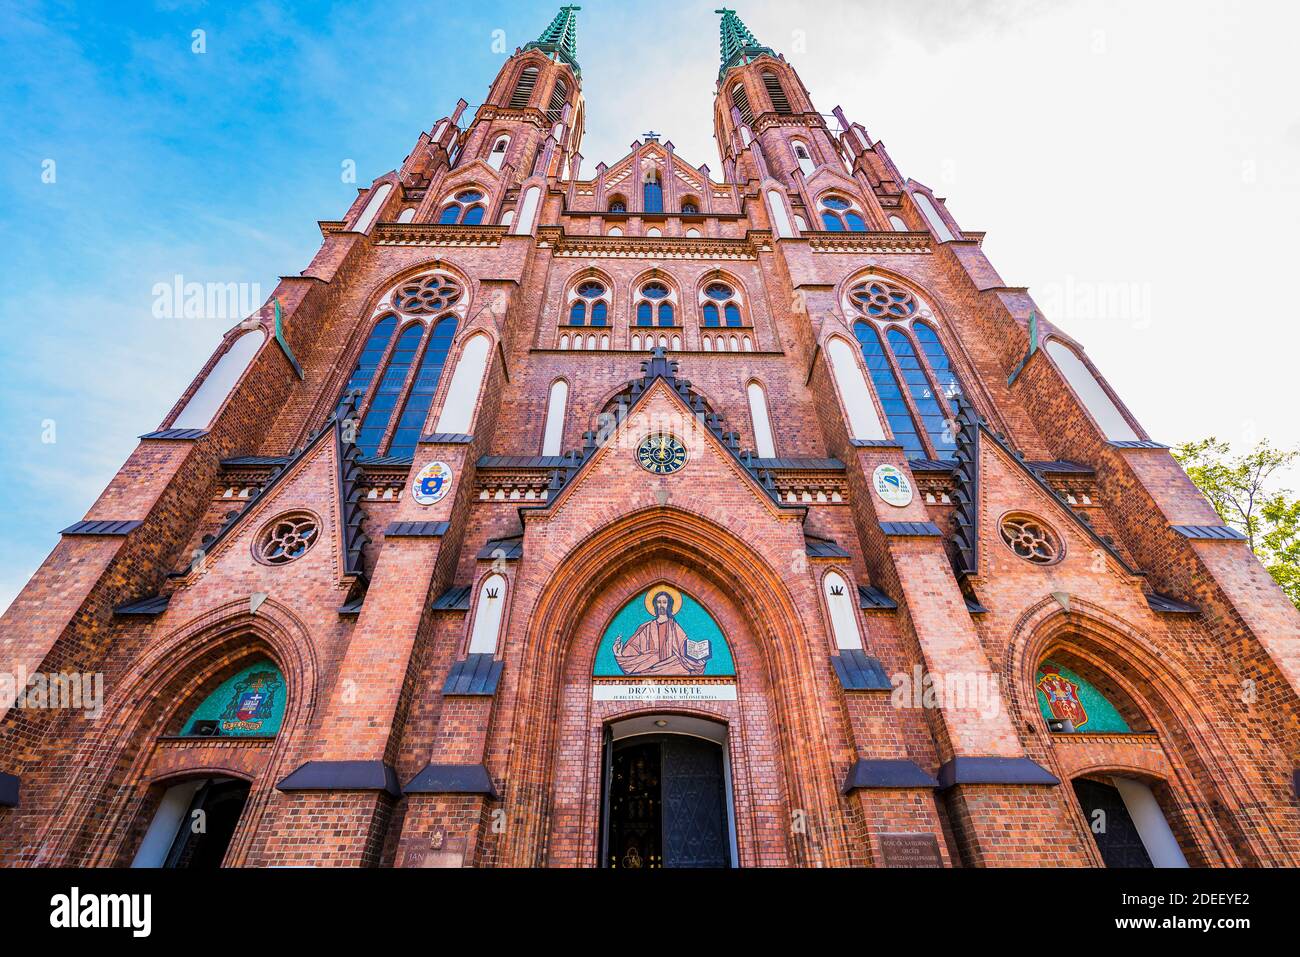 La cathédrale Saint-Florian, ou la cathédrale Saint-Michel l'Archange et Saint-Florian le Martyr. Les tours de 75 mètres dominent le Praga dist de l'est de Varsovie Banque D'Images